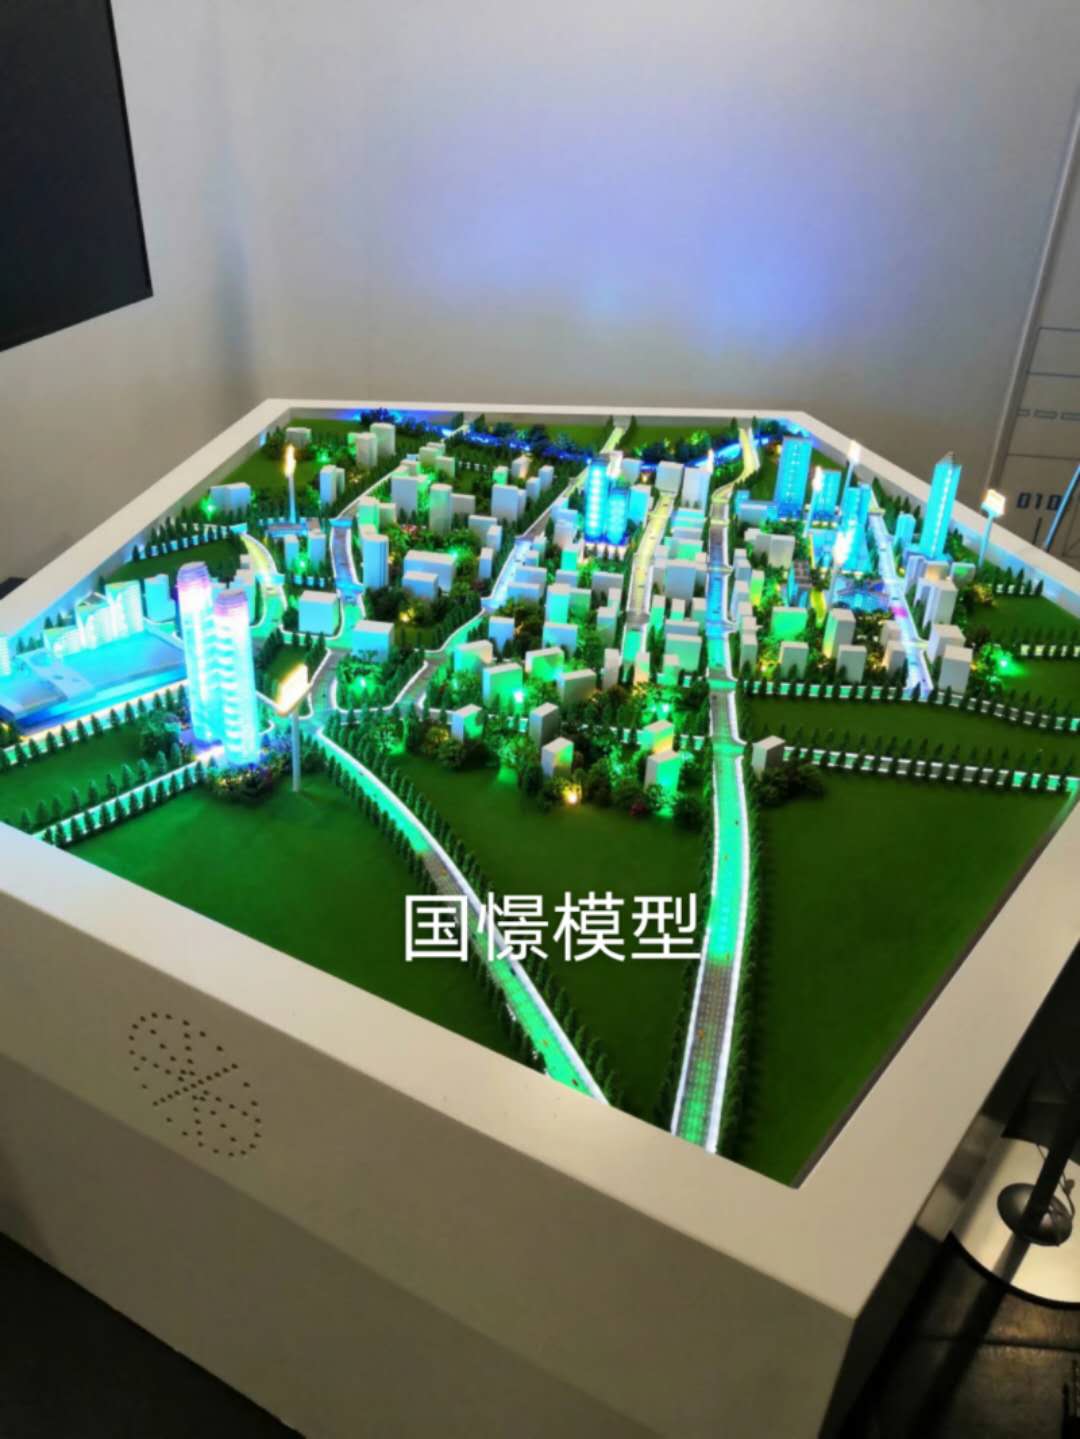 中方县建筑模型